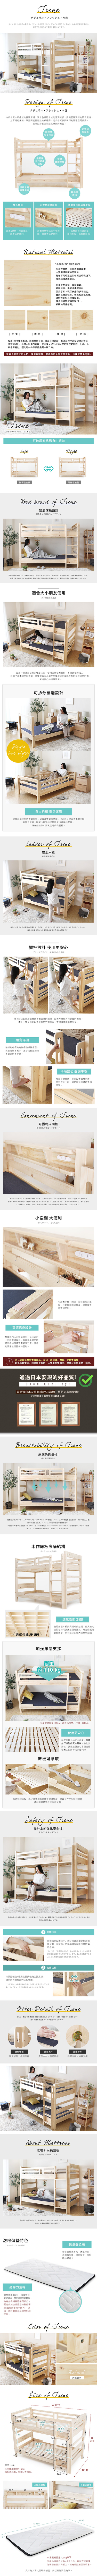 預購9月上旬 雙層床 艾琳系列日式清新雙層床架組(上下舖)3件式/H&D東稻家居